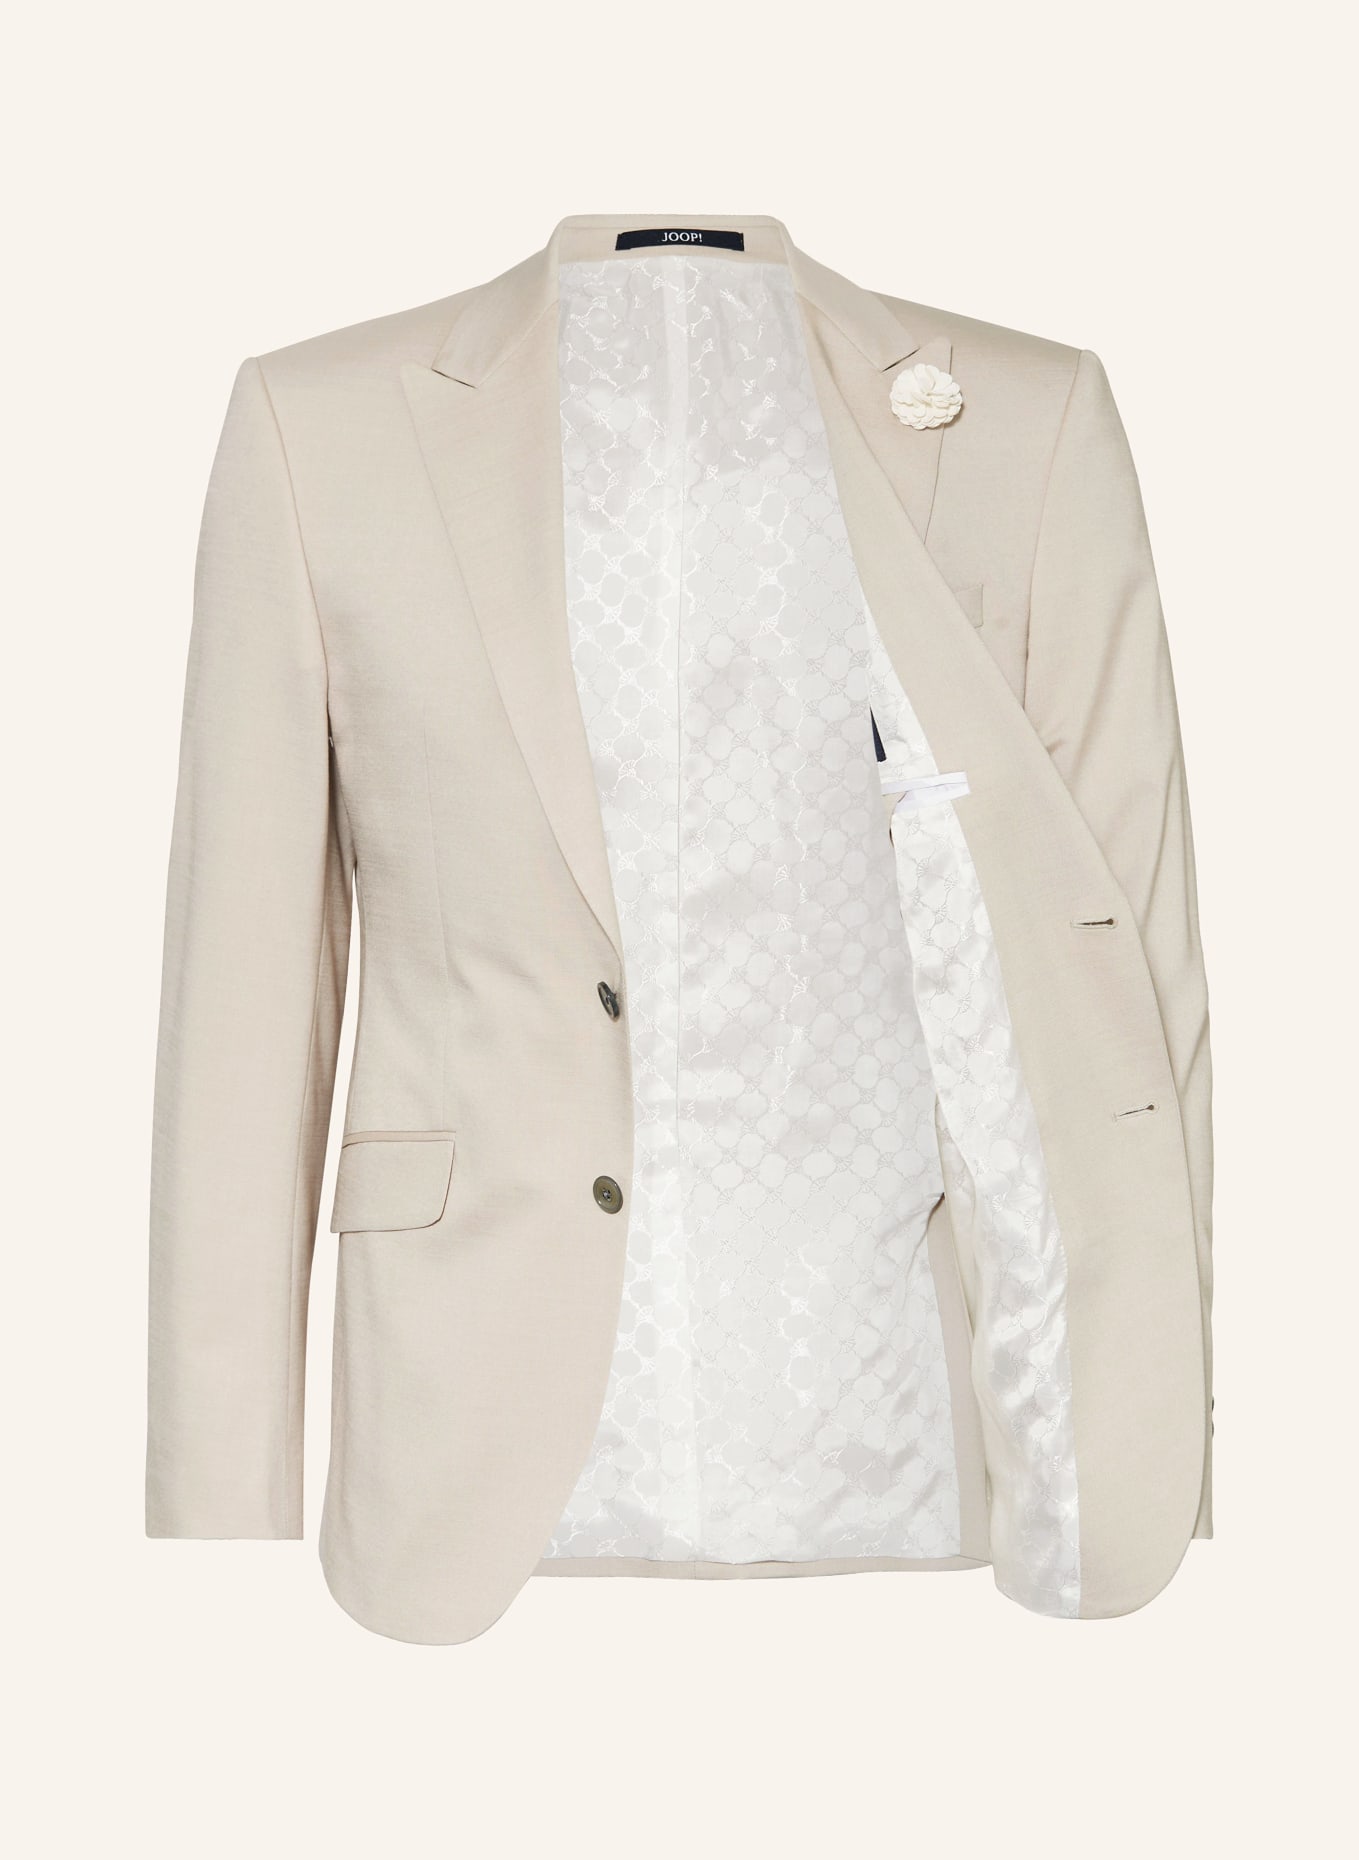 JOOP! Suit jacket HAWKER slim fit, Color: 290 Open Beige                 290 (Image 4)